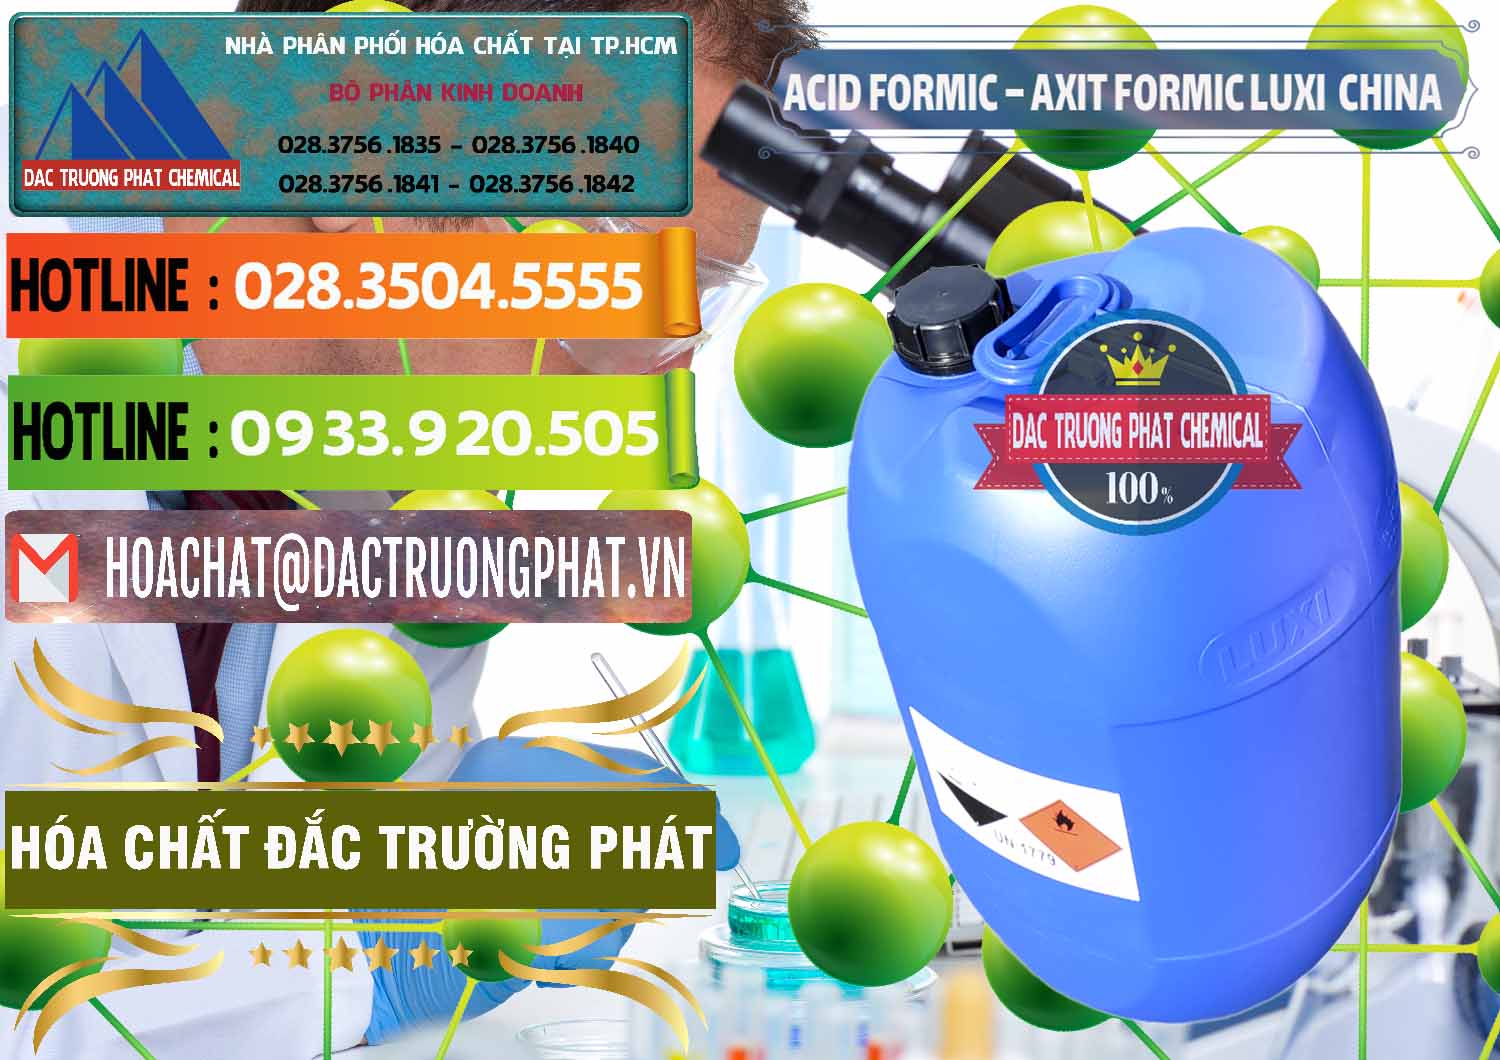 Bán ( phân phối ) Acid Formic - Axit Formic Luxi Trung Quốc China - 0029 - Cty kinh doanh ( cung cấp ) hóa chất tại TP.HCM - cungcaphoachat.com.vn